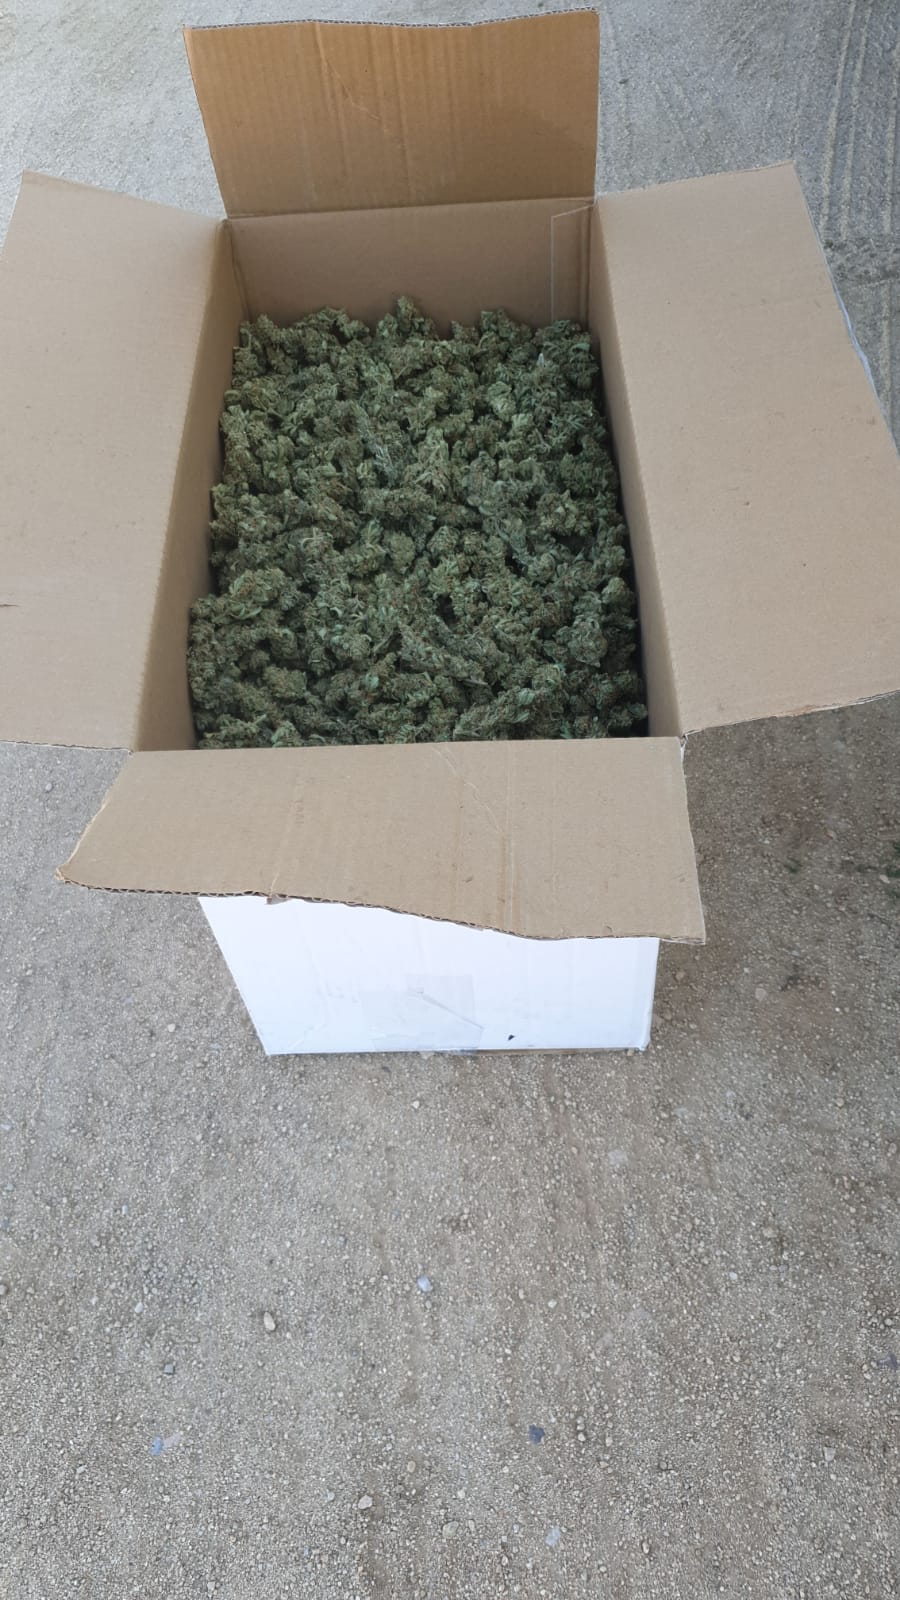 La caixa amb els cabdells de marihuana